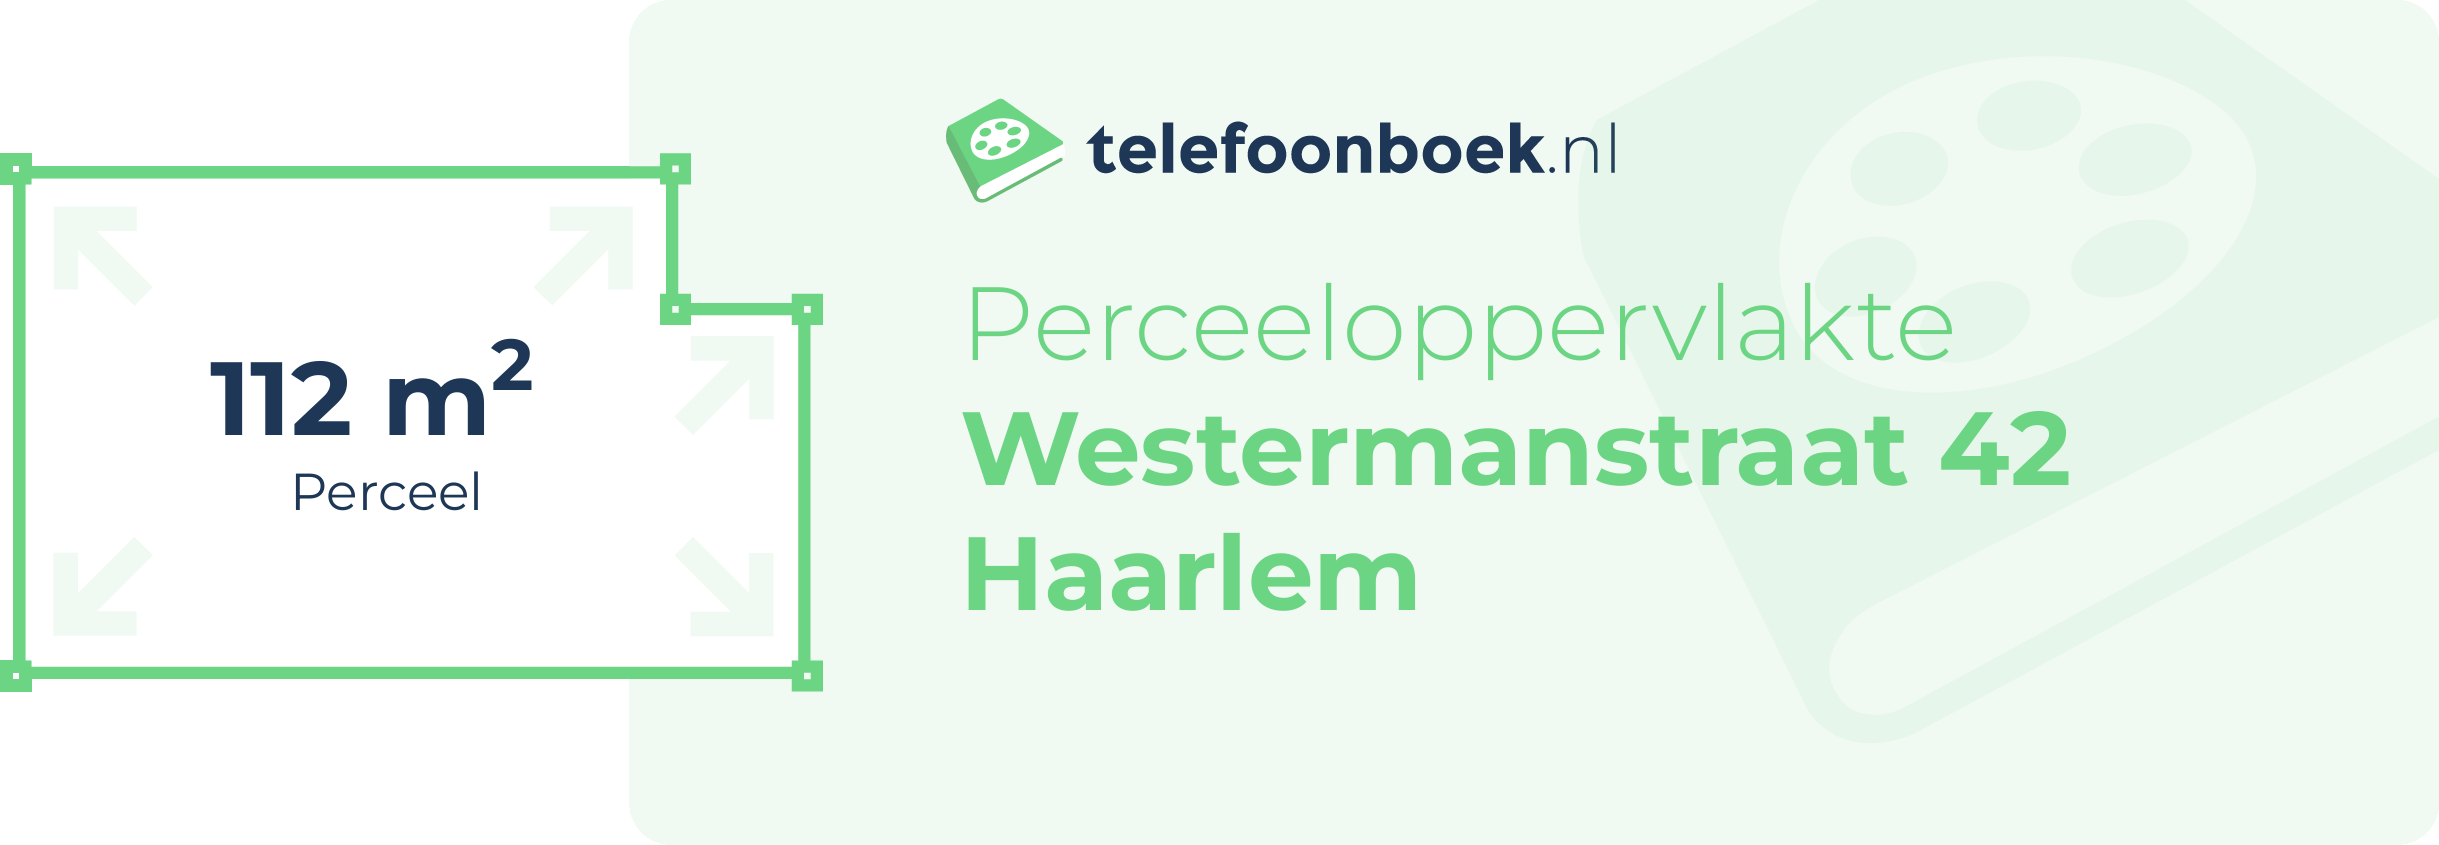 Perceeloppervlakte Westermanstraat 42 Haarlem